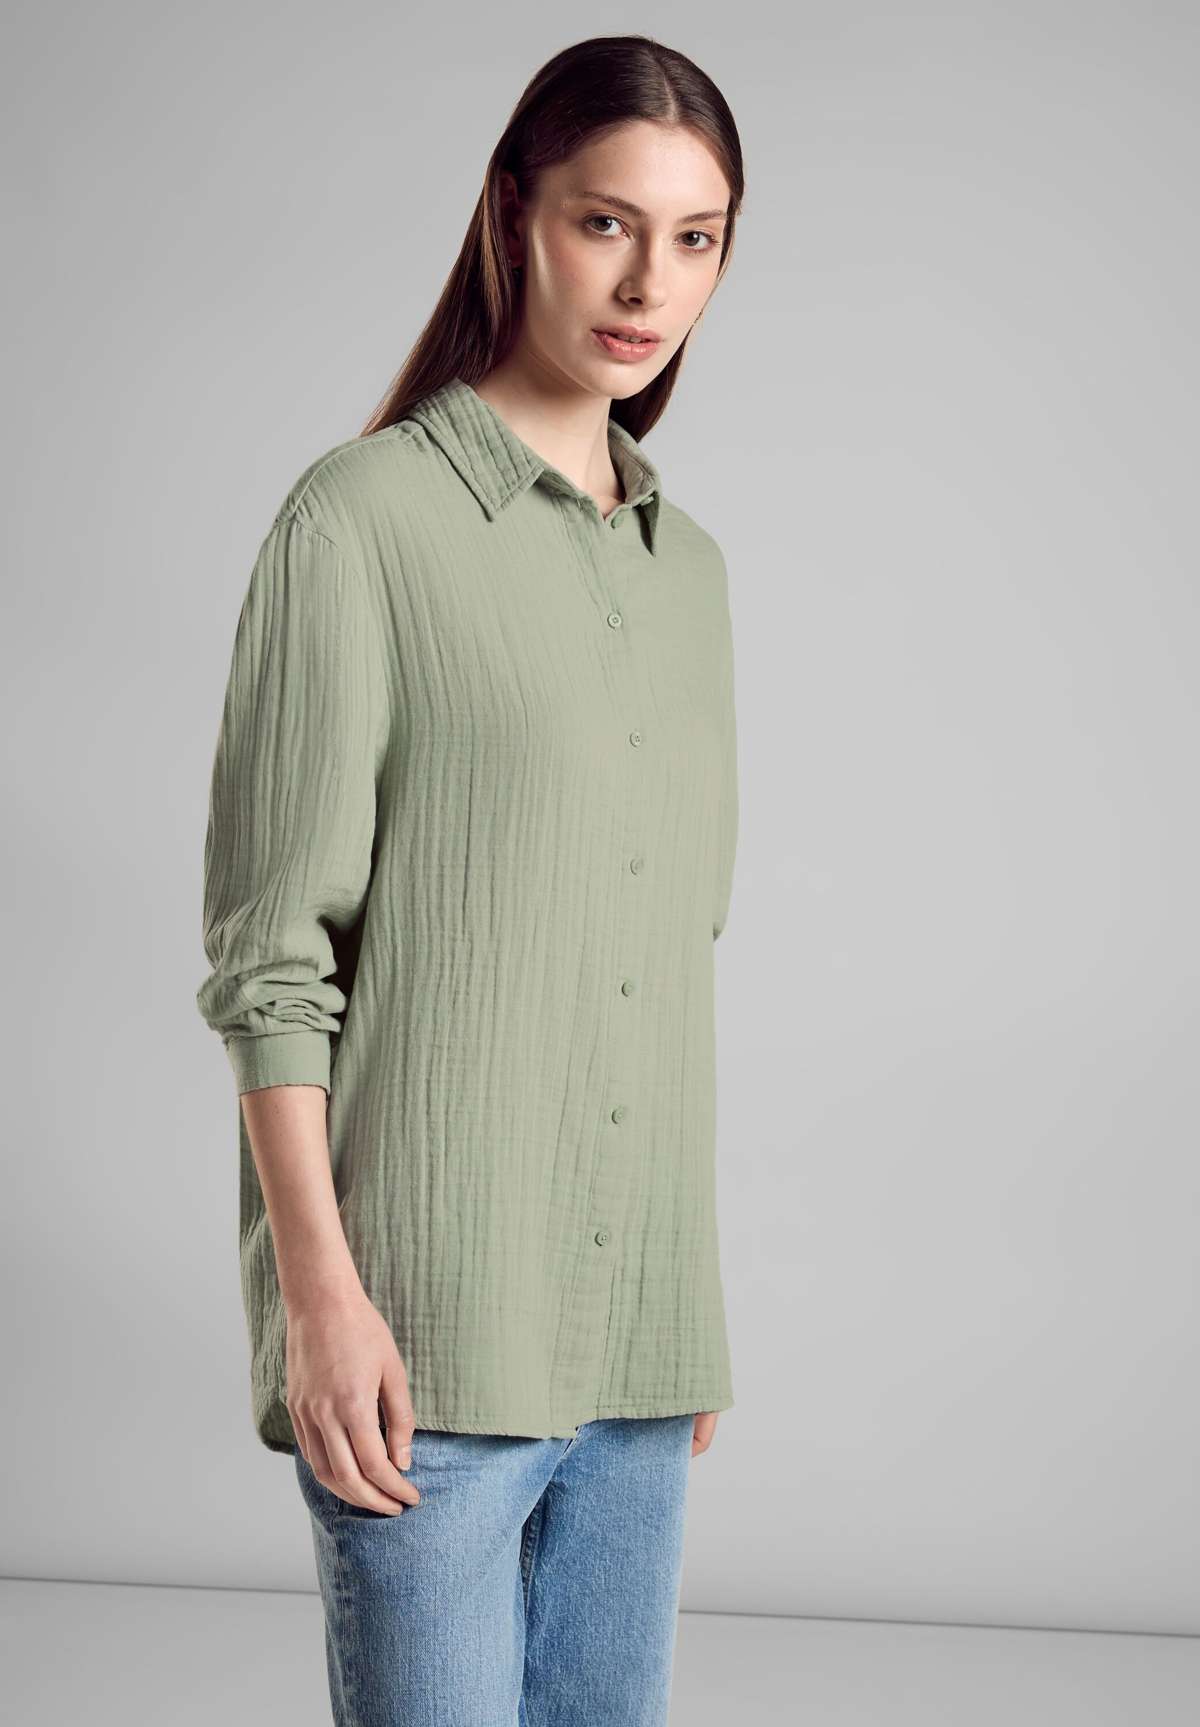 Блузка-рубашка, очень длинная, не гладкая.